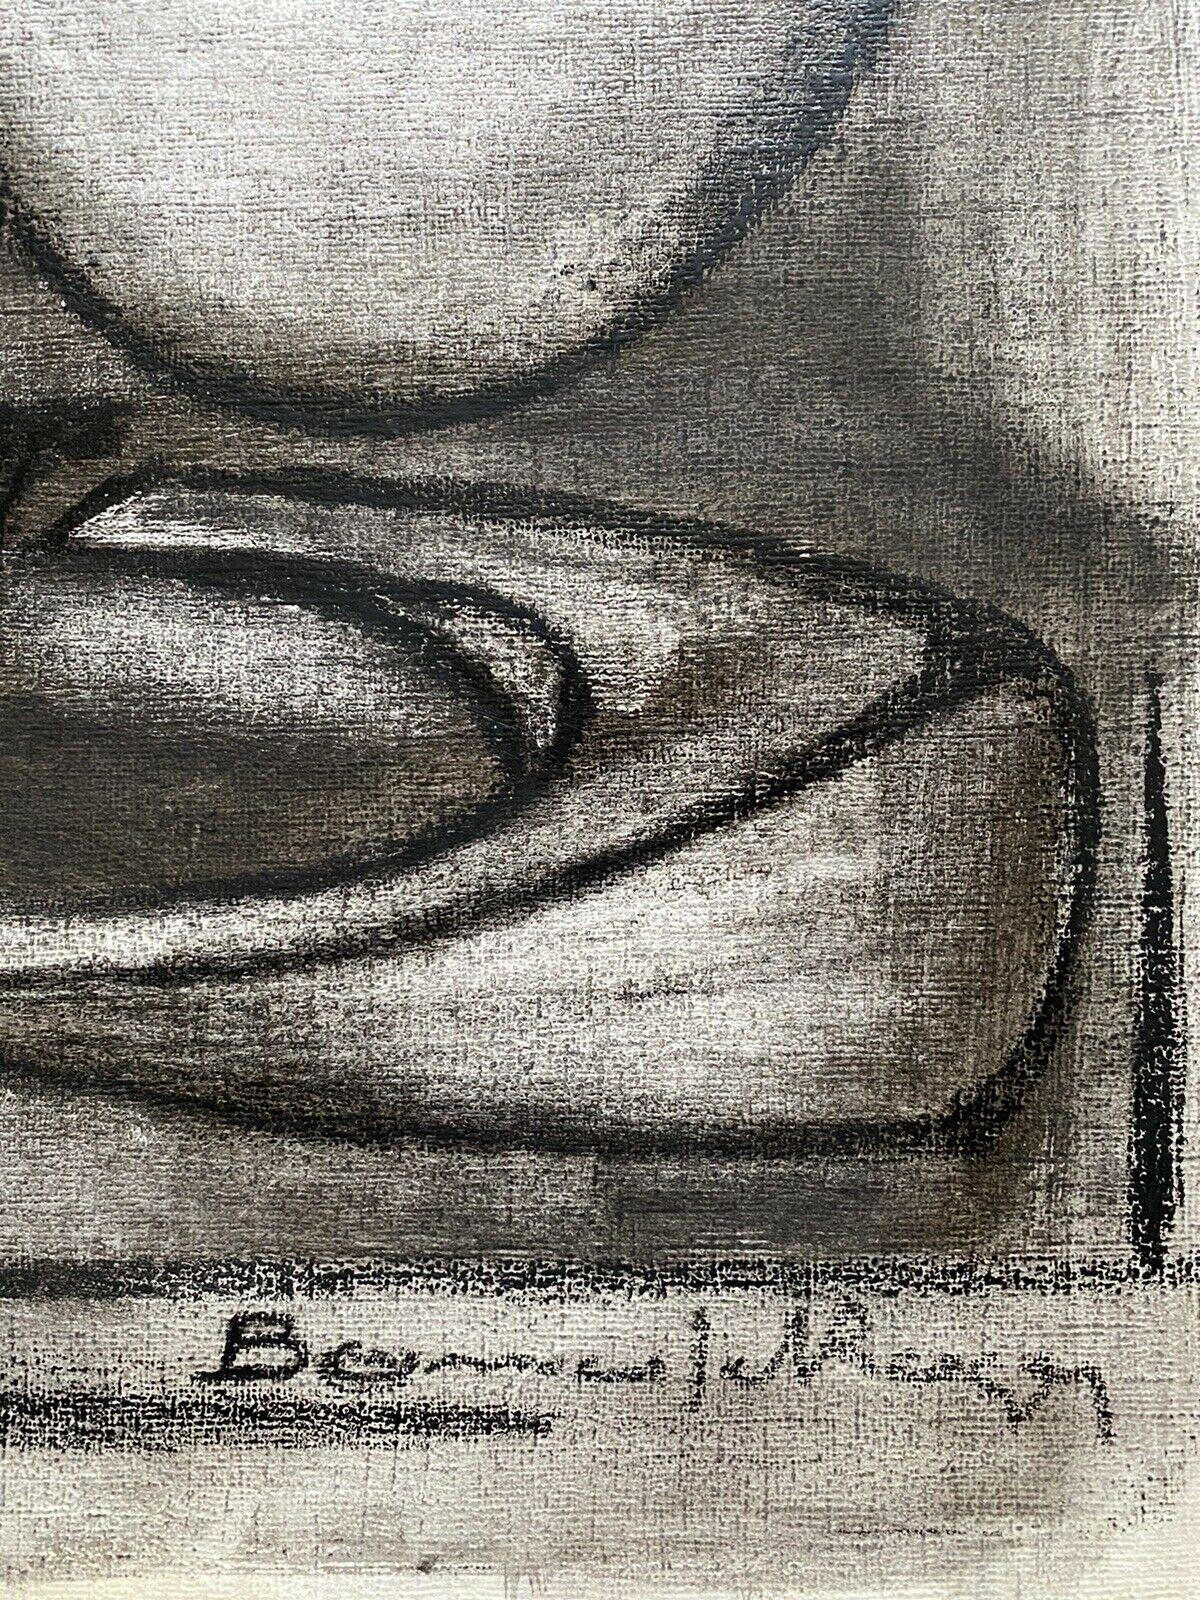 Roger Bonafe  (Franzose, geb. 1932) unterzeichnet 
ölgemälde auf dickem Kunstdruckpapier, verso beschriftet

Größe 29,75 x 20 Zoll 

Bonafe wurde 1932 in der Stadt Caux (Herault) in Südfrankreich geboren. Mitte der fünfziger Jahre kam er nach Paris